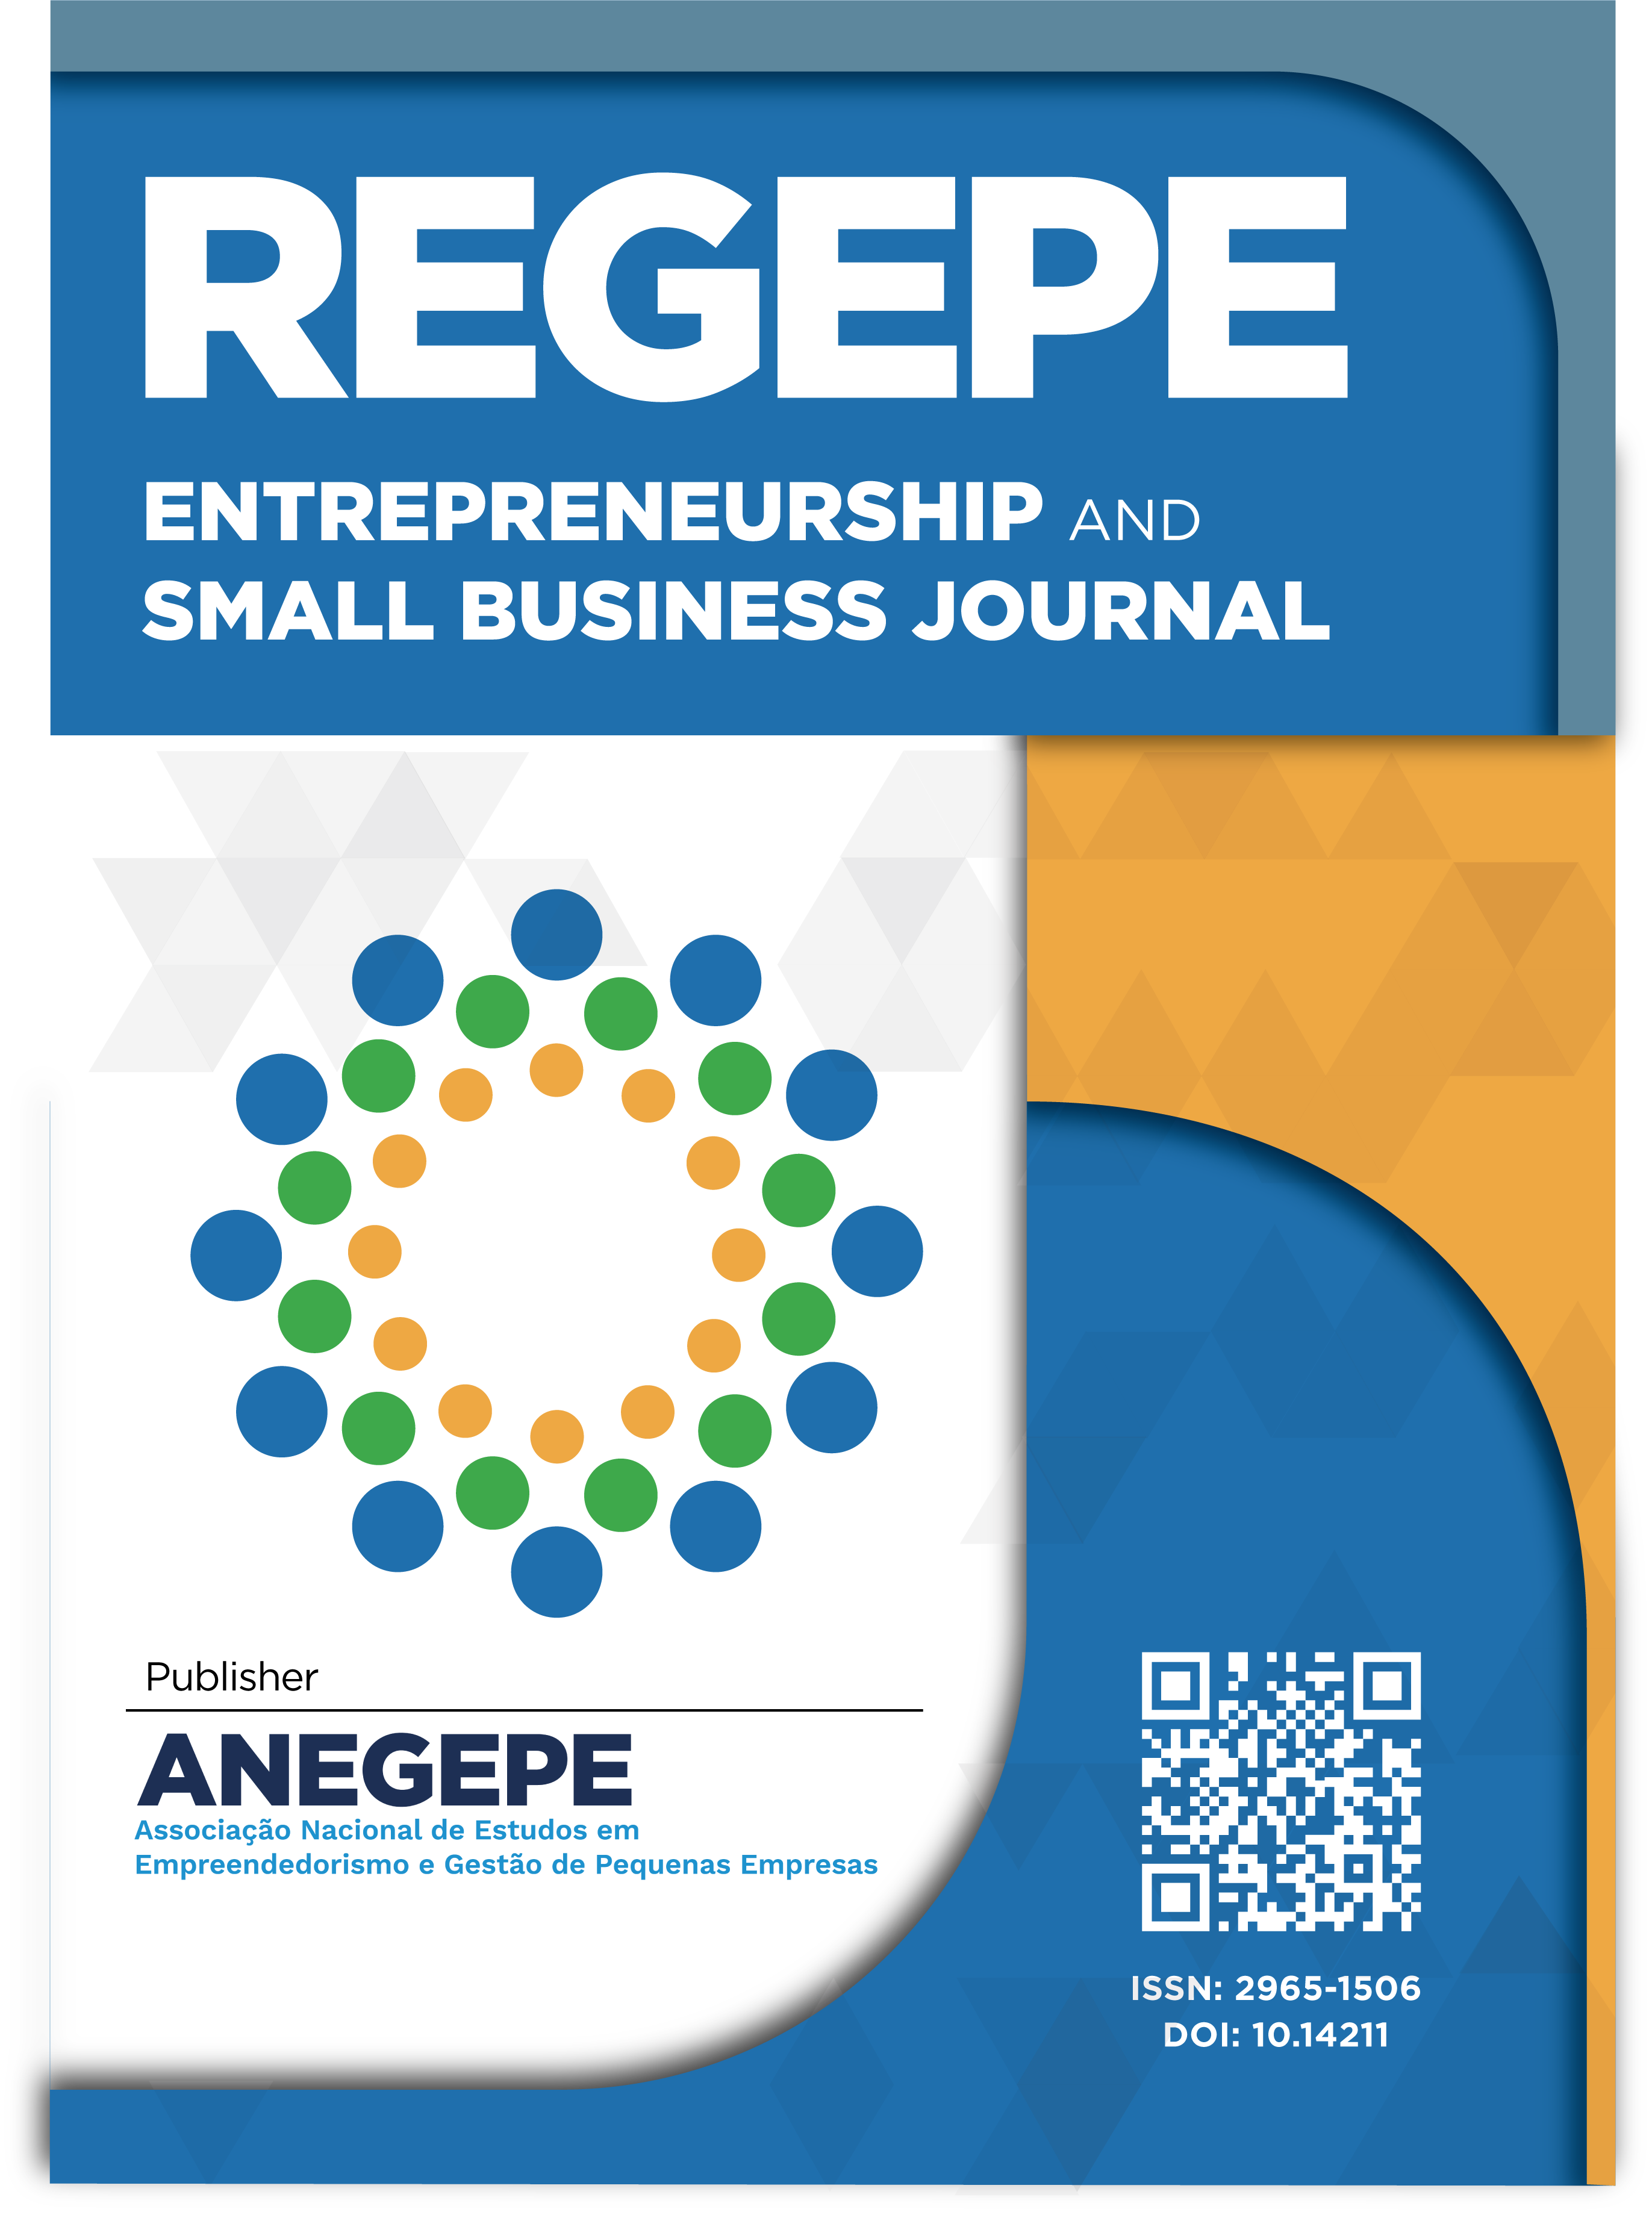 REGEPE Entrepreneurship and Small Business Journal